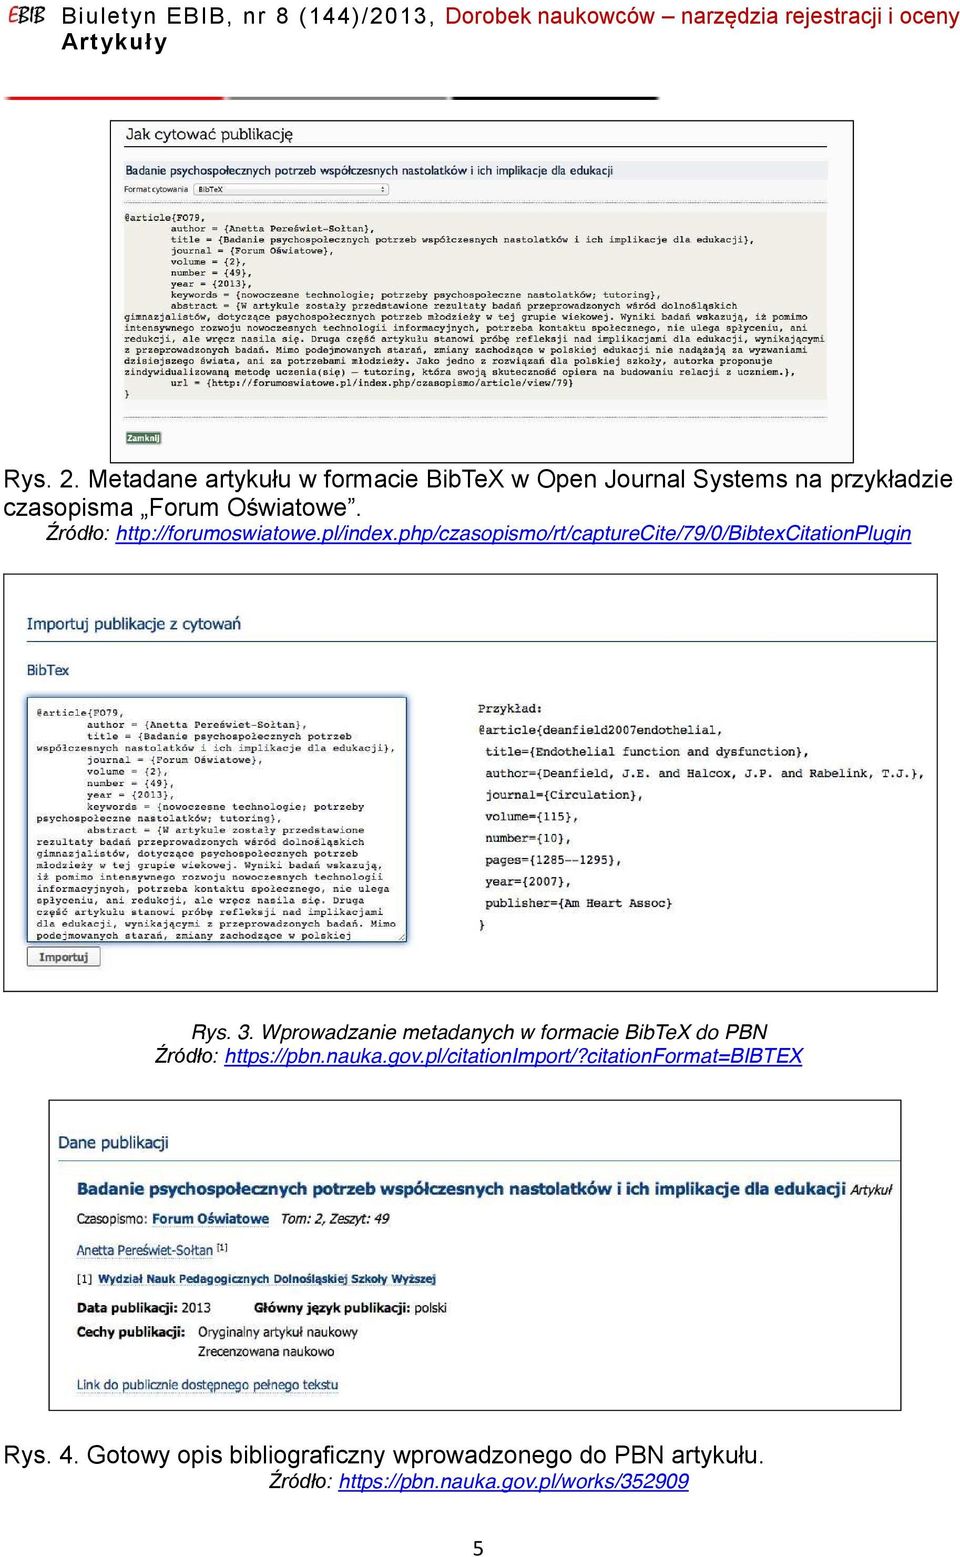 Wprowadzanie metadanych w formacie BibTeX do PBN ródło: https://pbn.nauka.gov.pl/citationimport/?